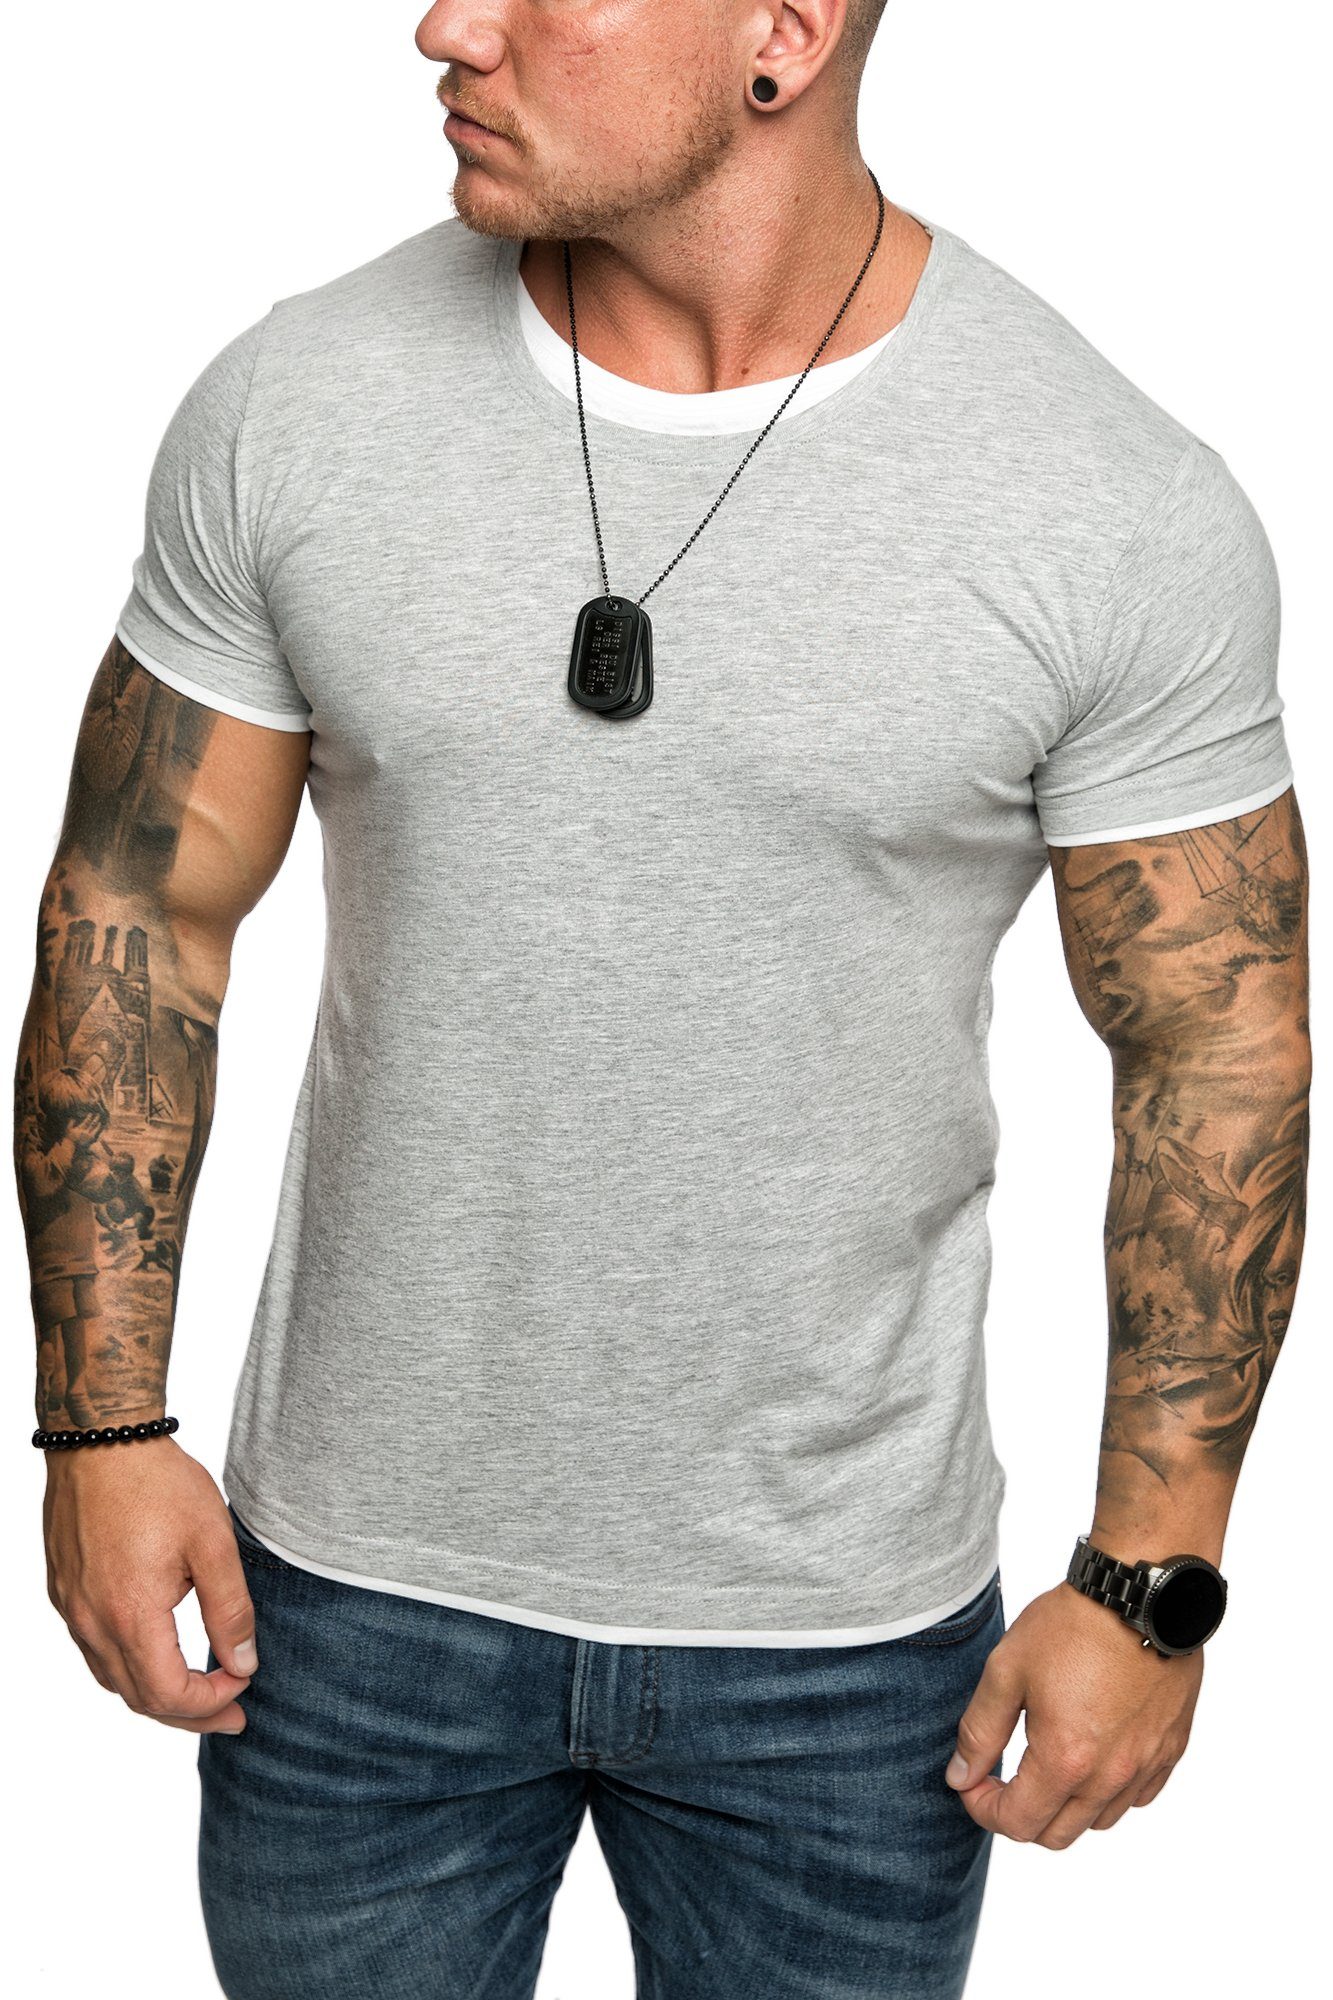 Herren Farbig T-Shirt Grau/Weiß Amaci&Sons Basic LAKEWOOD Slim-Fit Doppel Shirt Rundhalsausschnitt mit